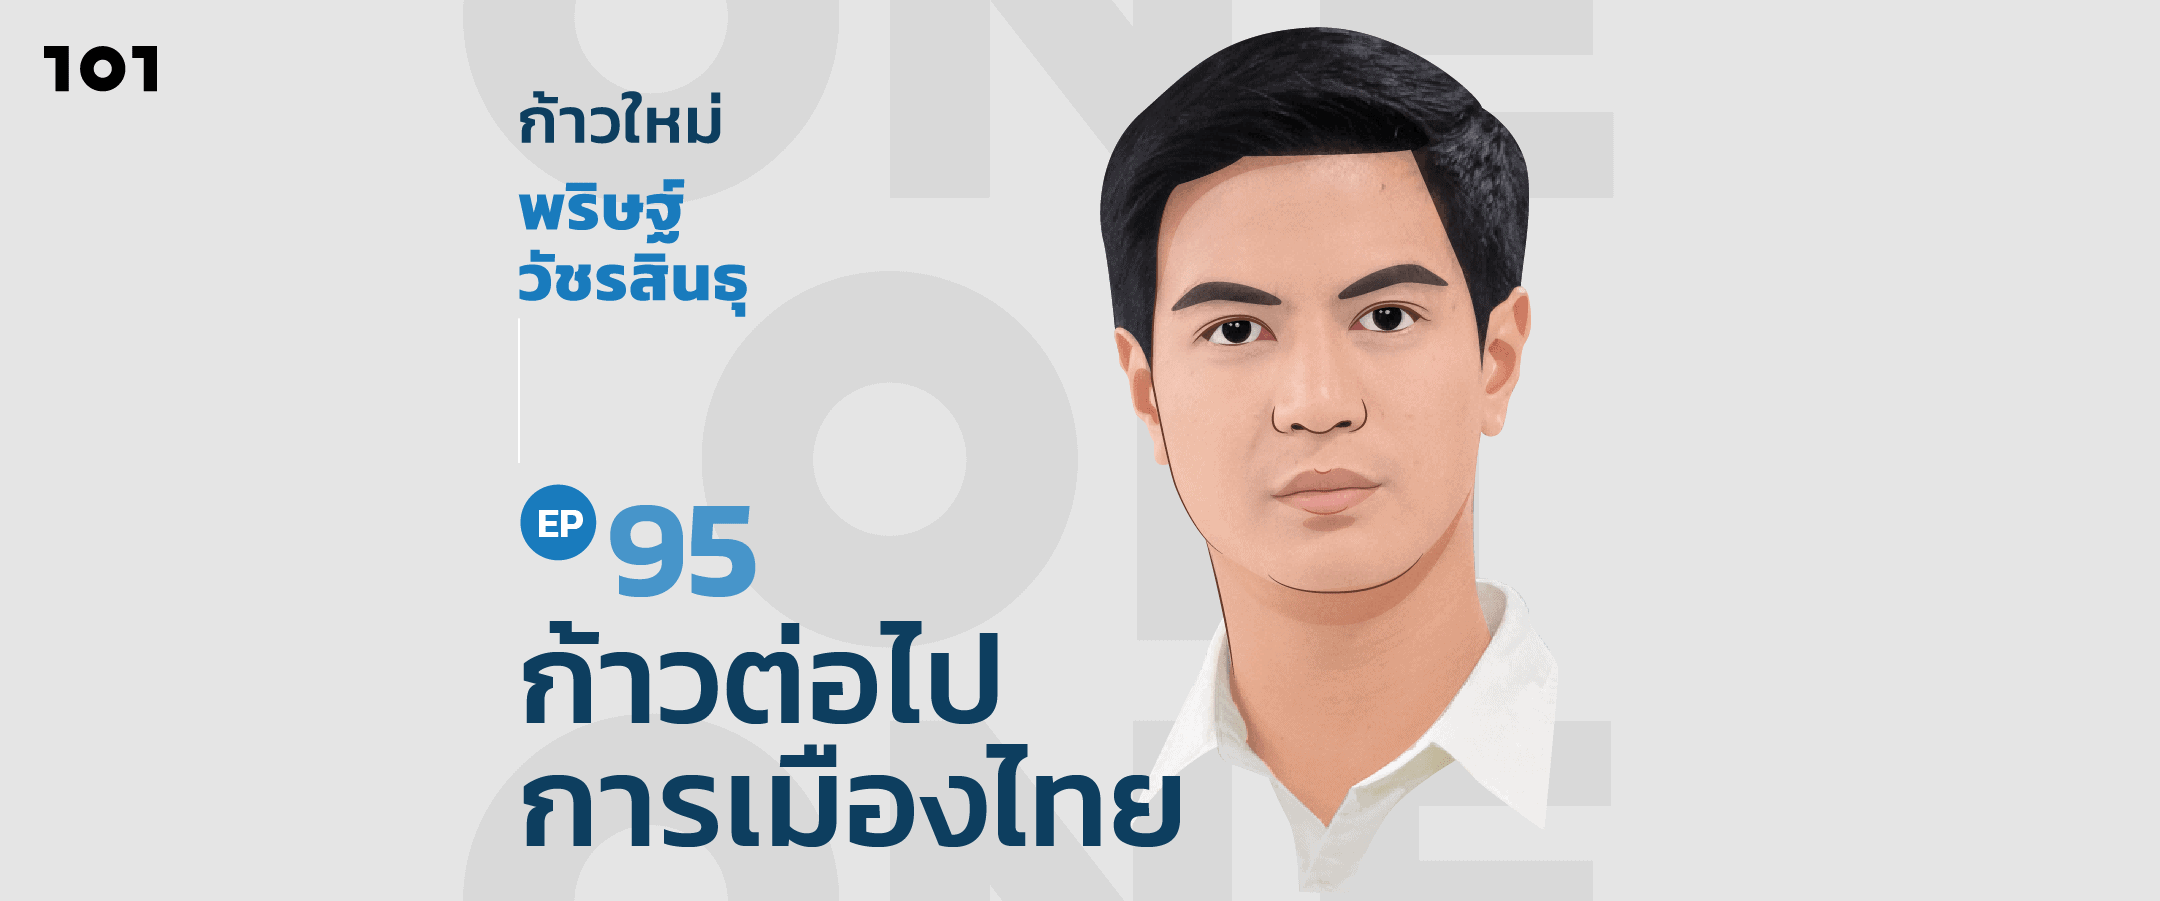 101 One-On-One Ep.95 "ก้าวใหม่ พริษฐ์ วัชรสินธุ ก้าวต่อไปการเมืองไทย"